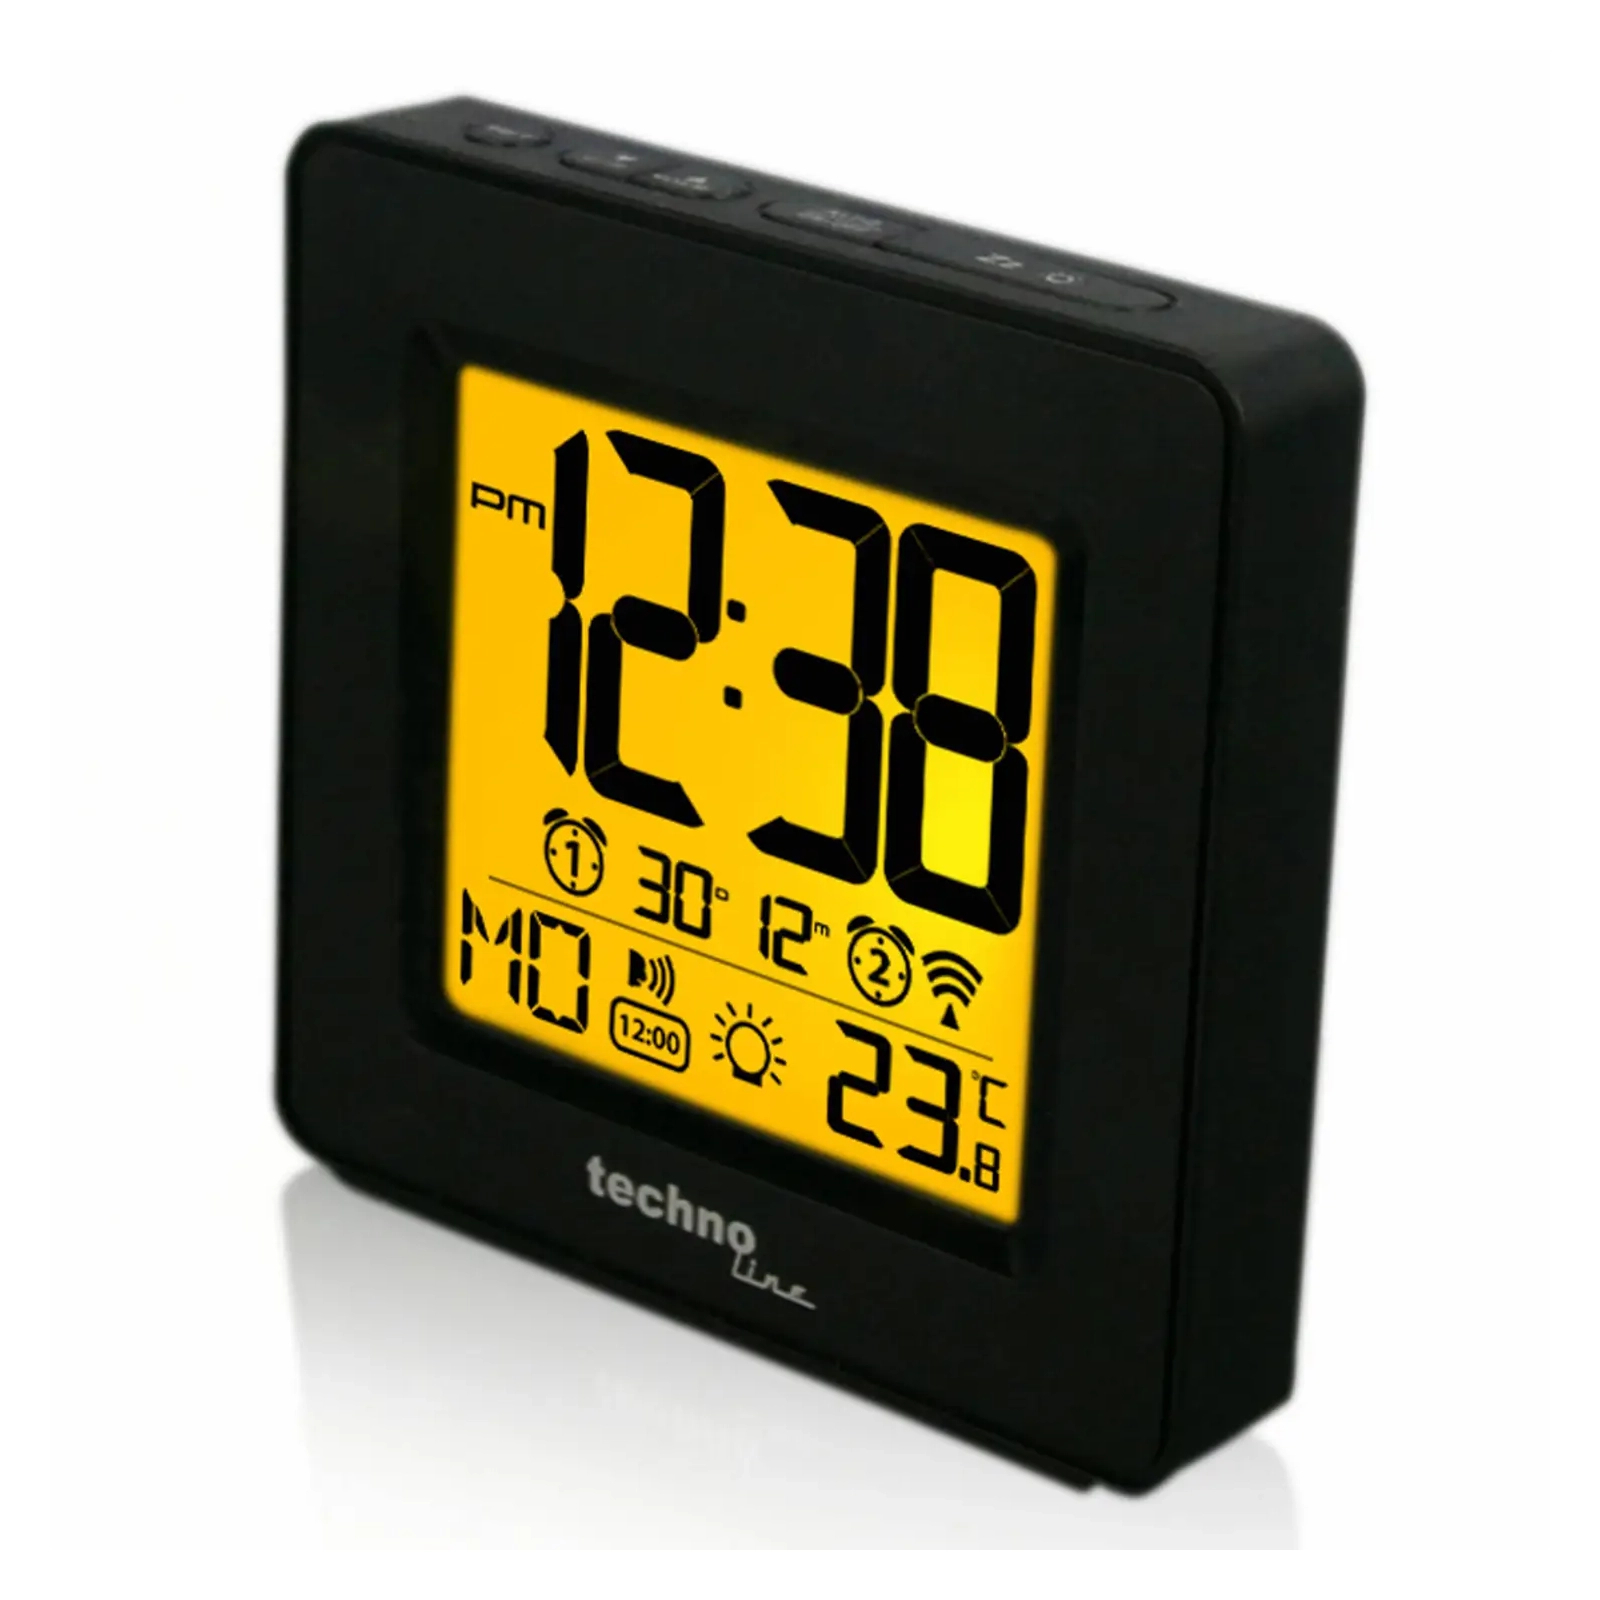 Настольные часы Technoline WT330 Black (DAS301808) изображение 3